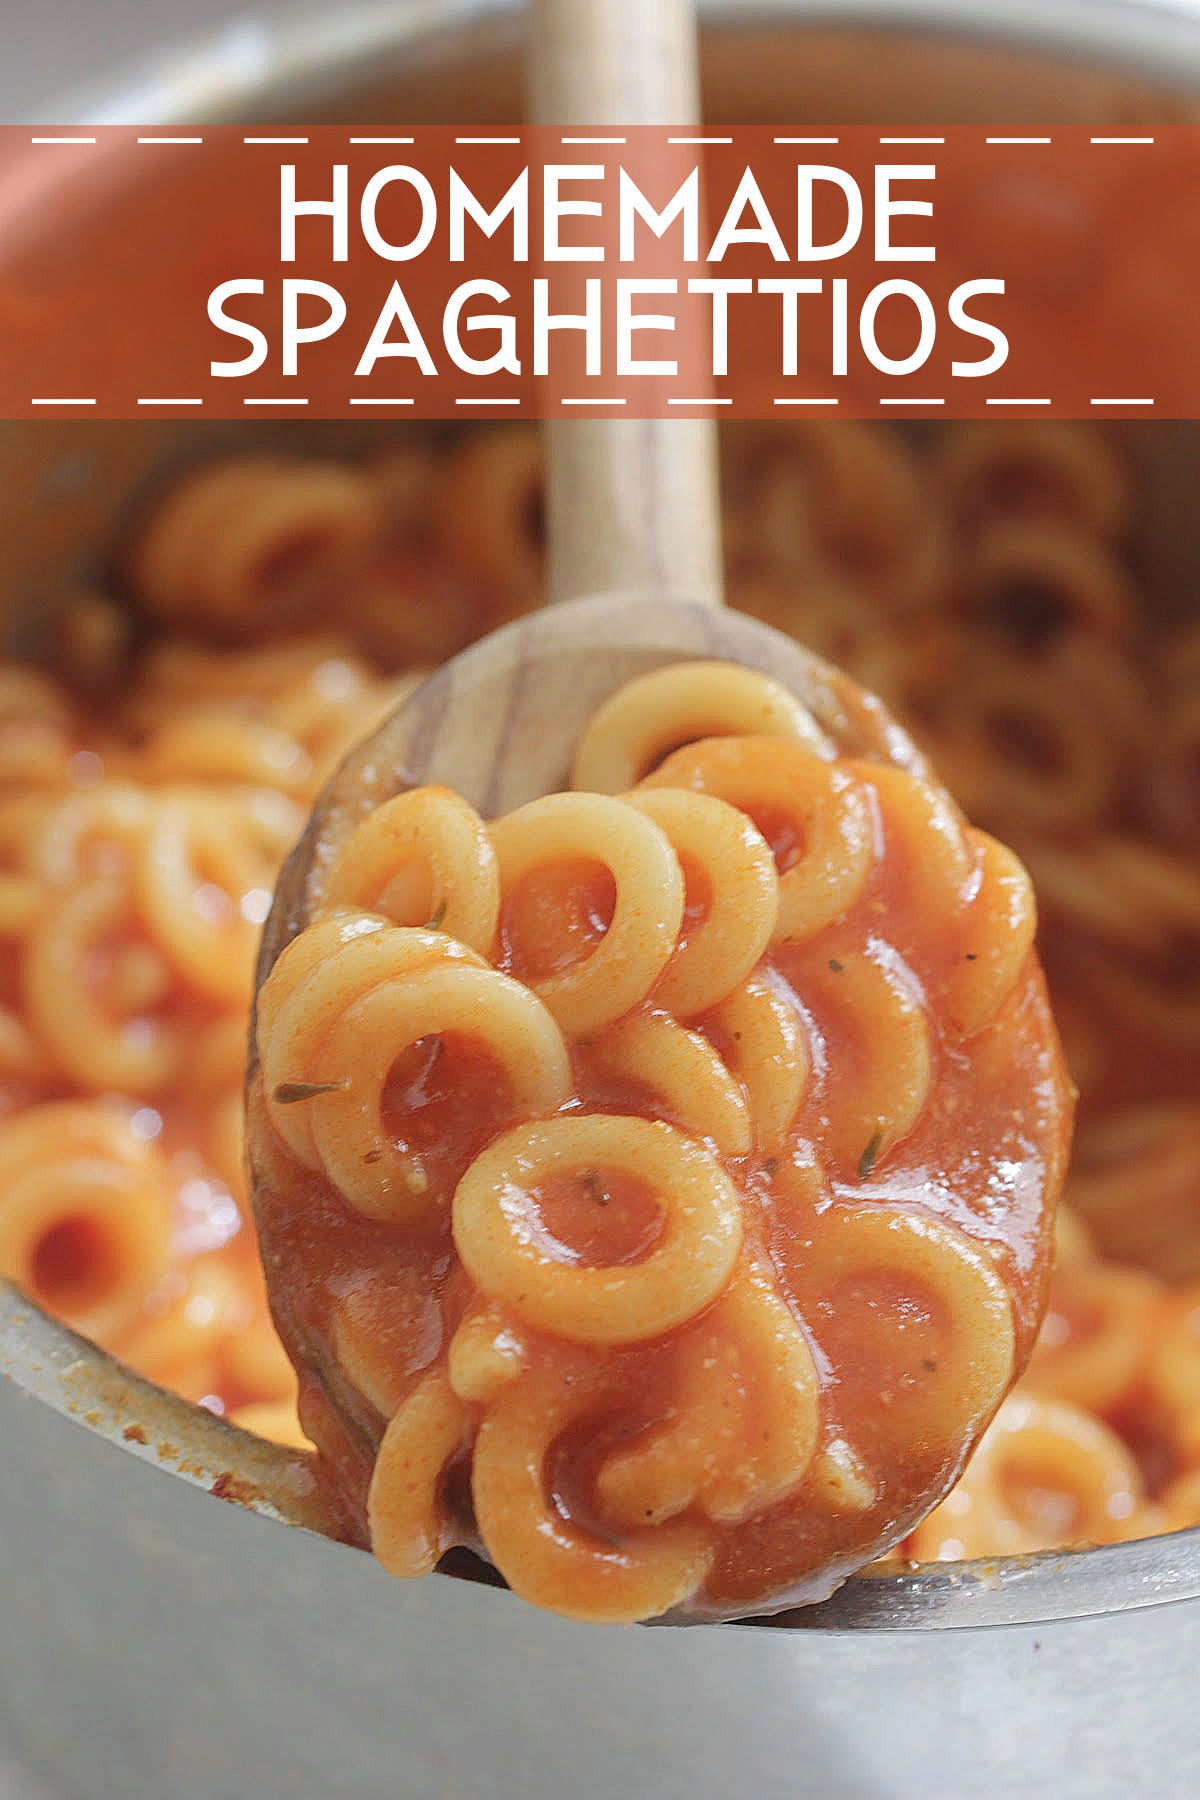 Homemade Spaghettios